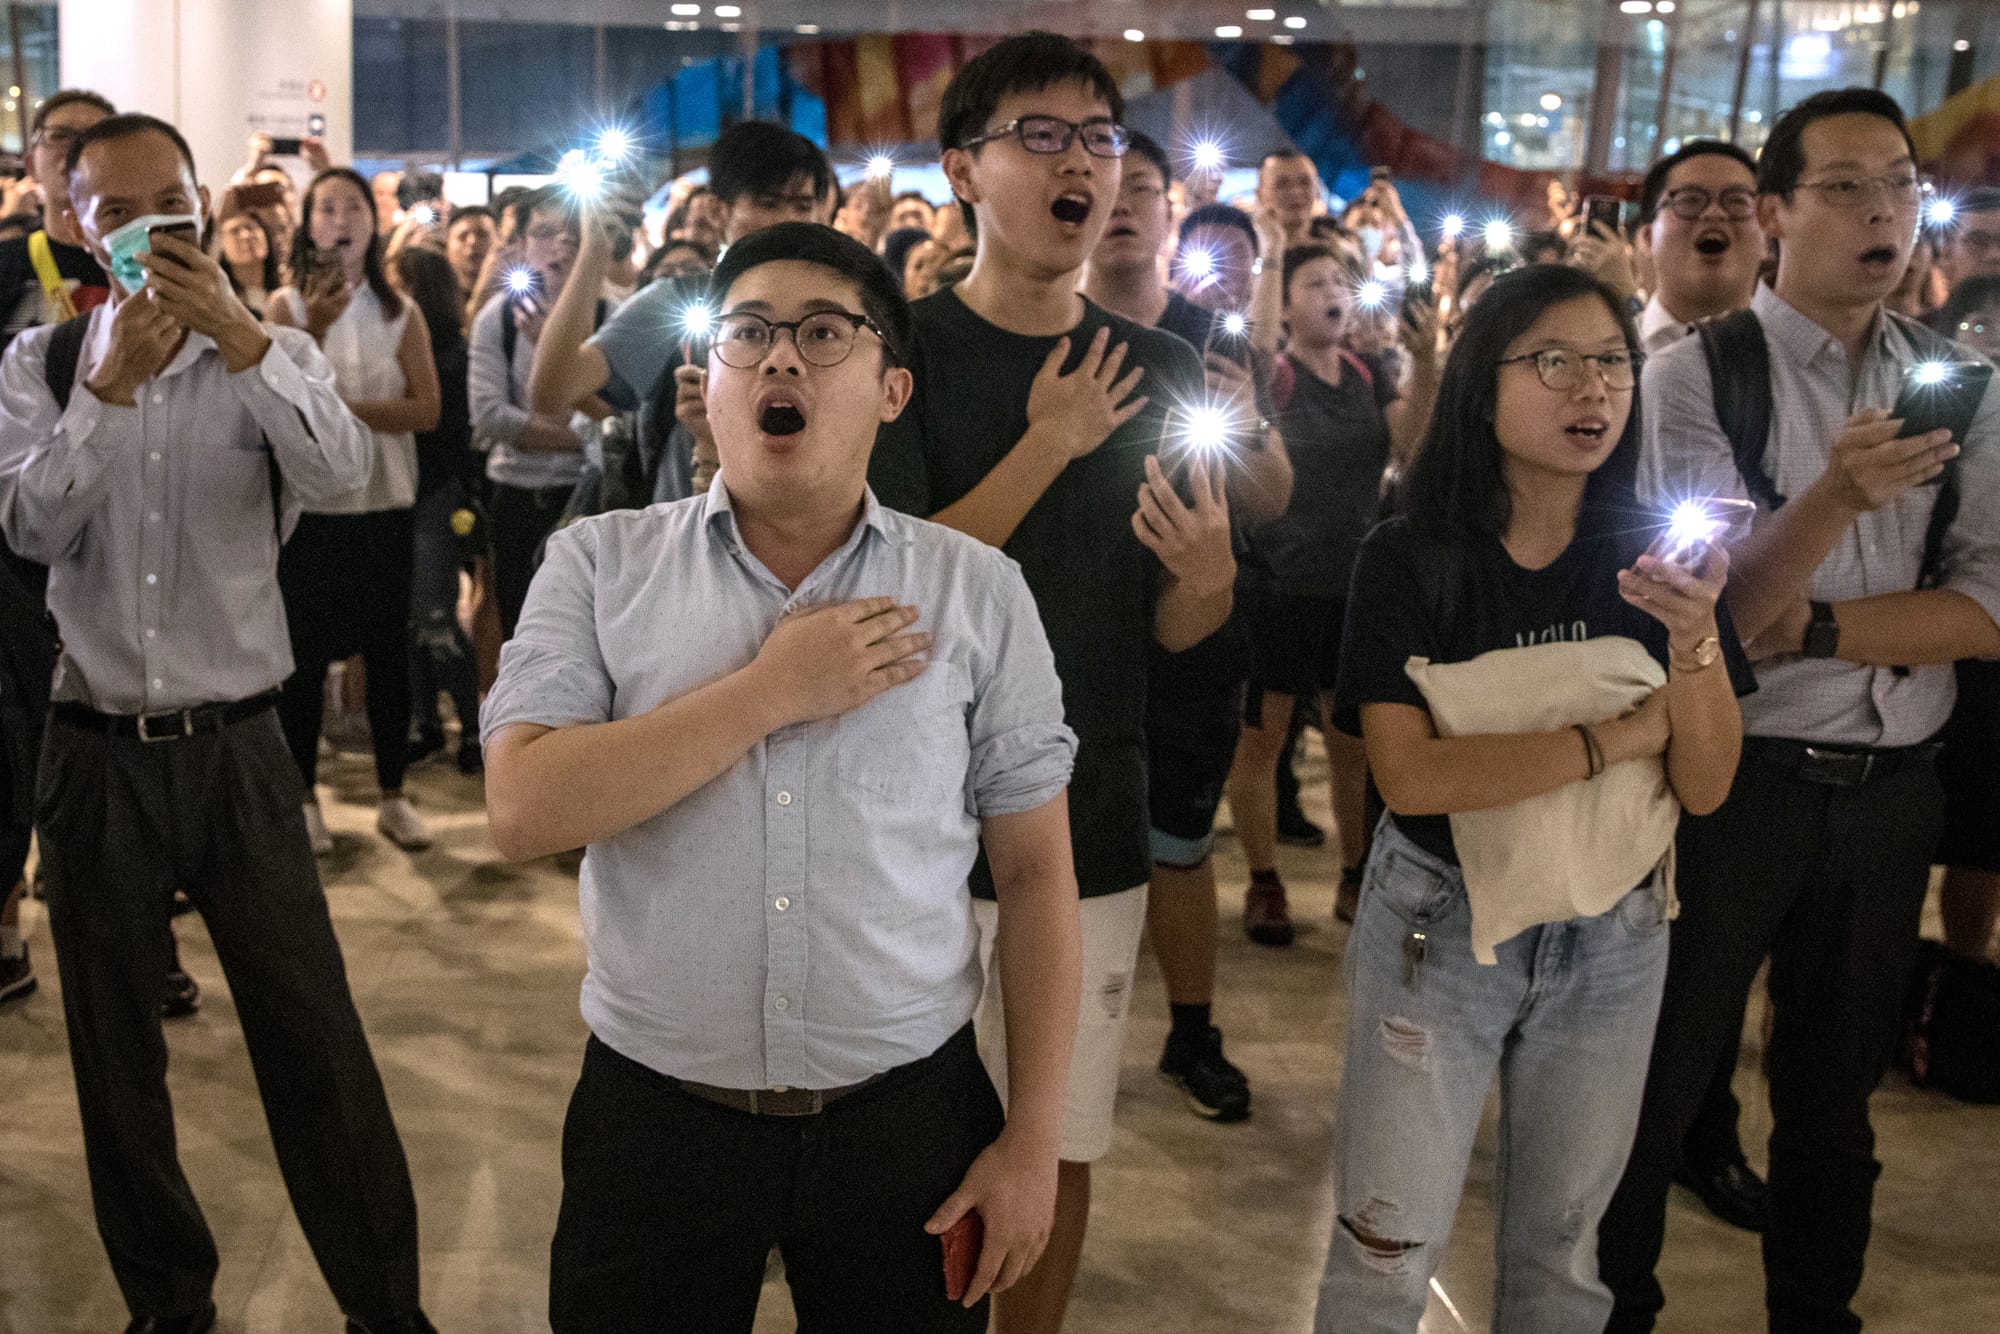 hong kong protesters sing glory to hong kong anthem song